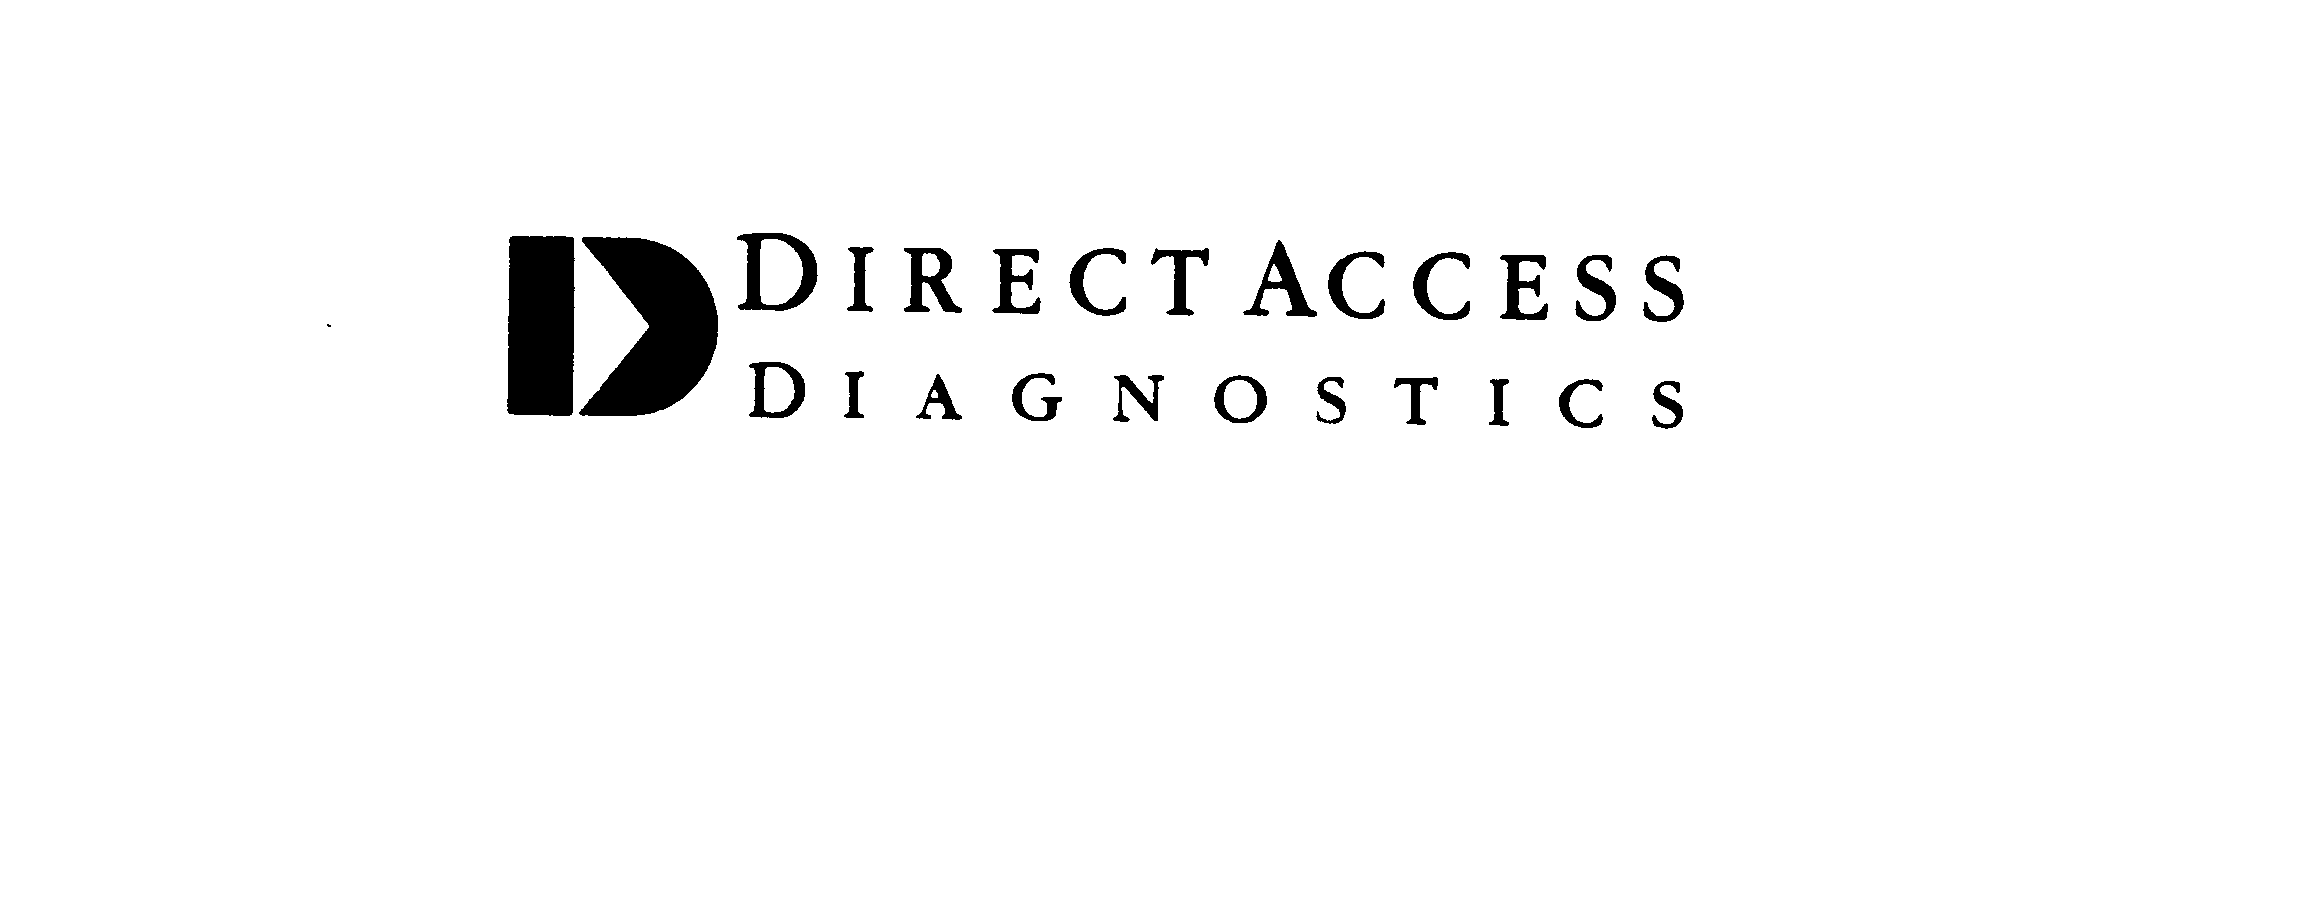  D DIRECT ACCESS DIAGNOSTICS